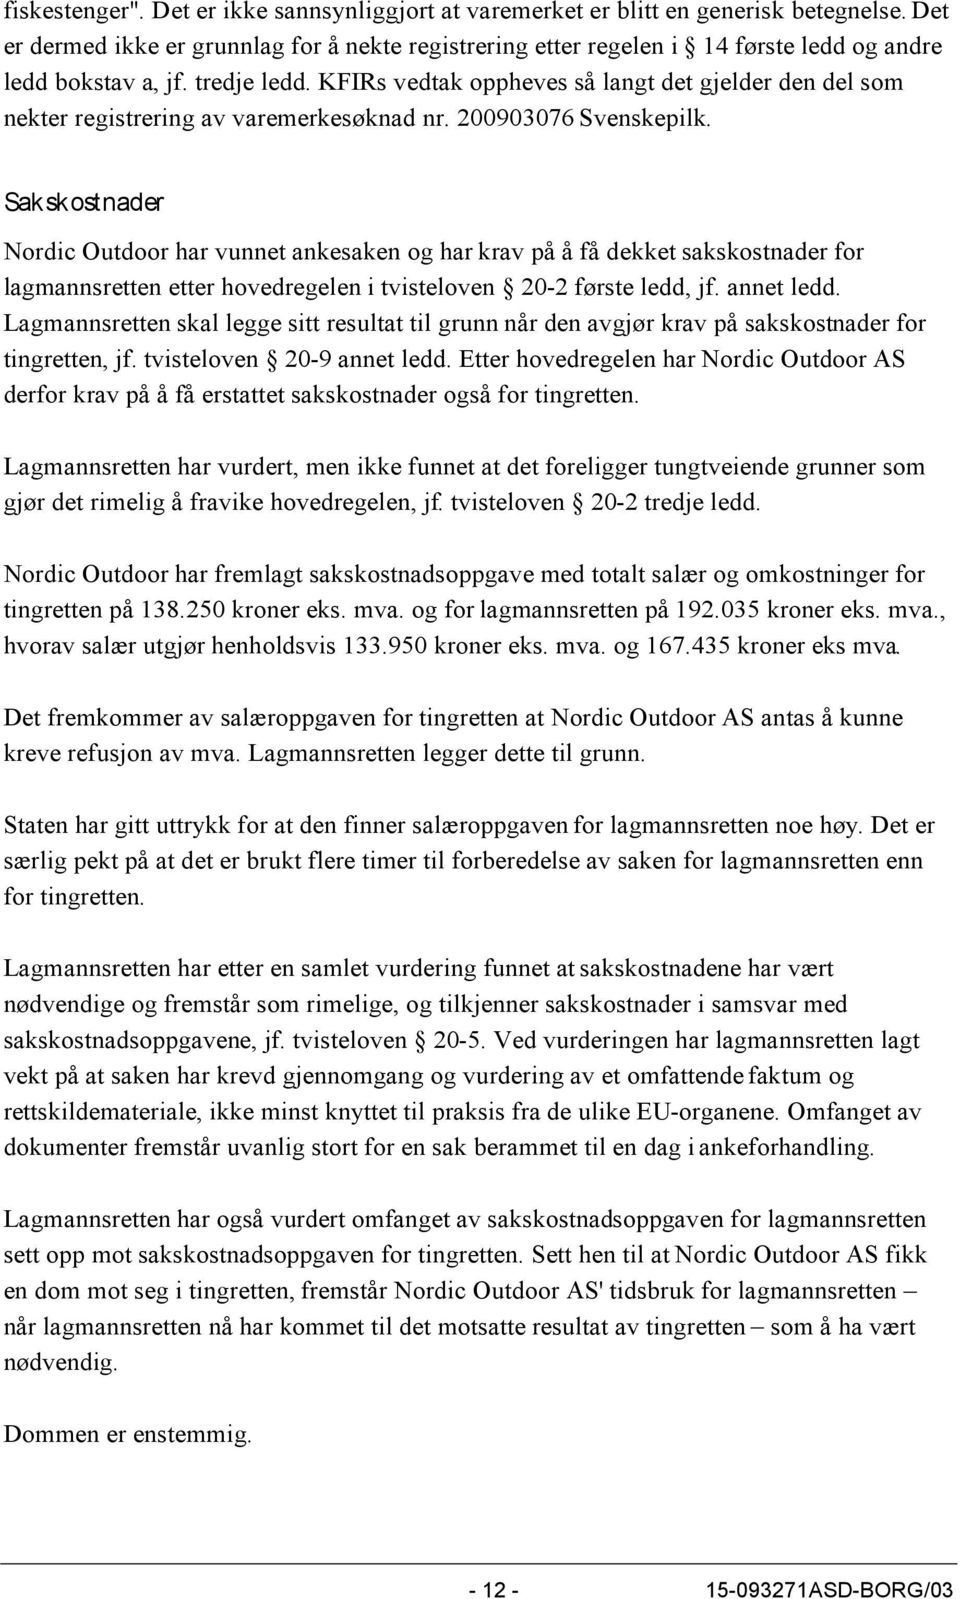 KFIRs vedtak oppheves så langt det gjelder den del som nekter registrering av varemerkesøknad nr. 200903076 Svenskepilk.